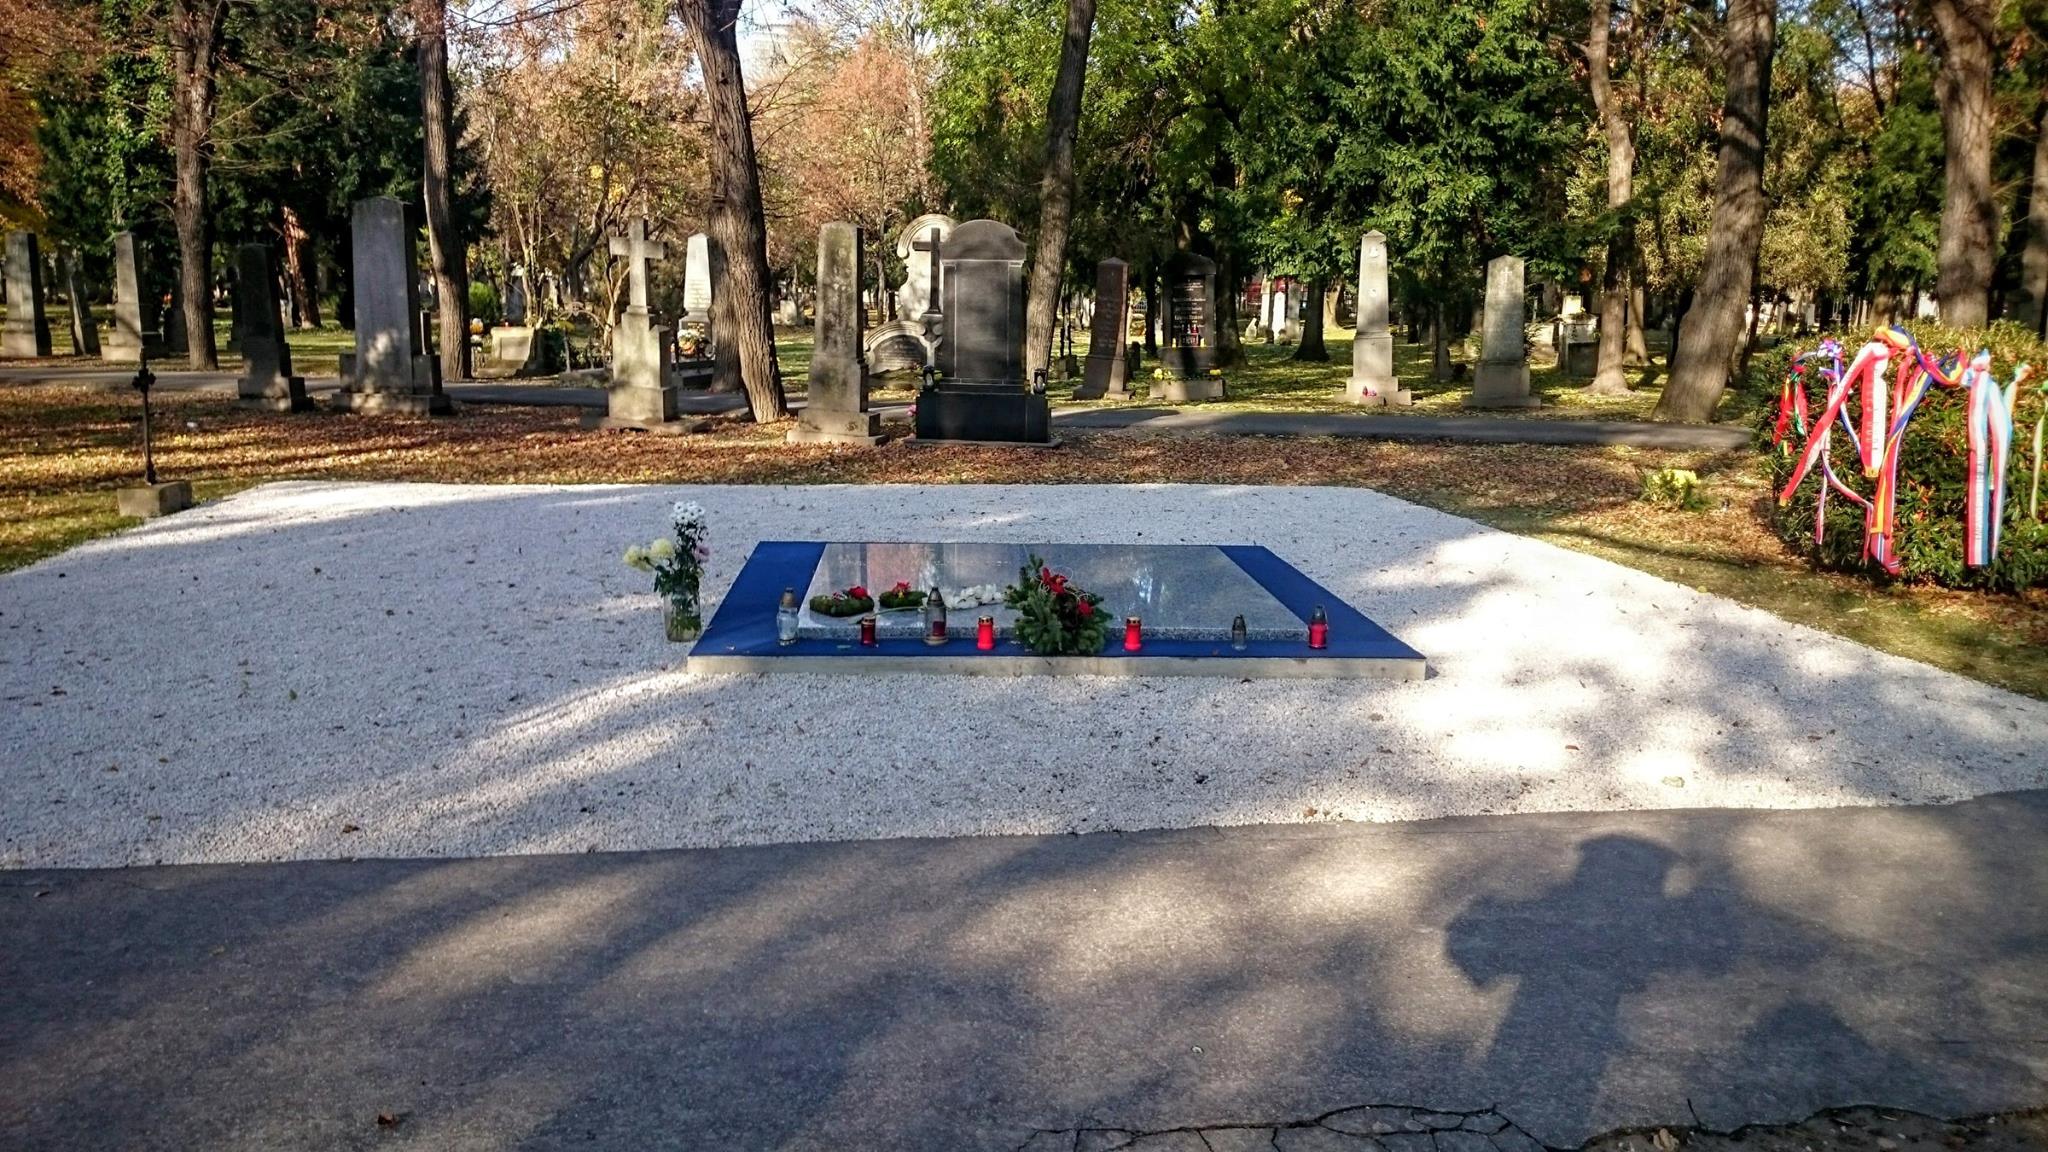 Premiér pri príležitosti 30. výročia vzniku SR položil kyticu k hrobu Michala Kováča